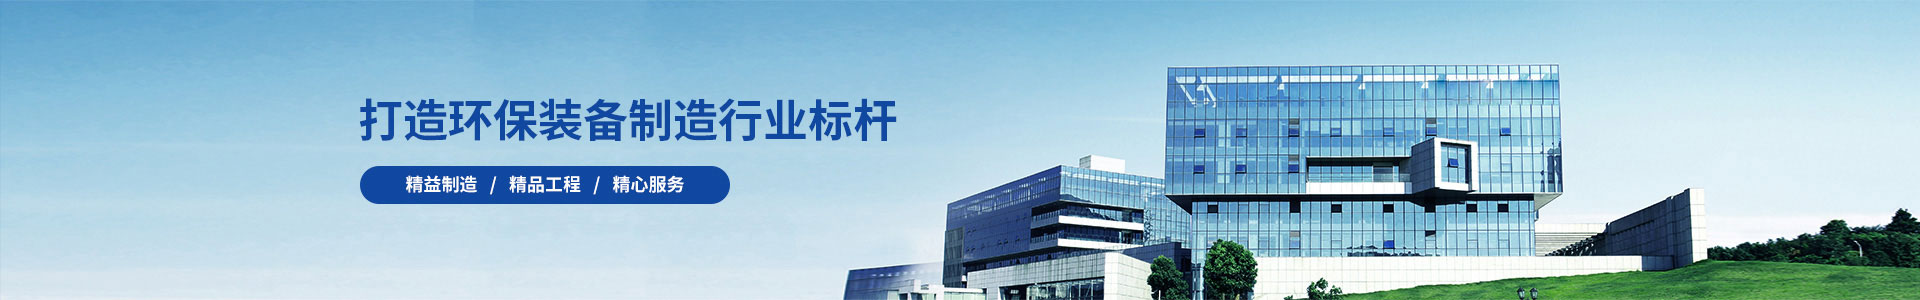 工程案例-江苏长源环保设备有限公司